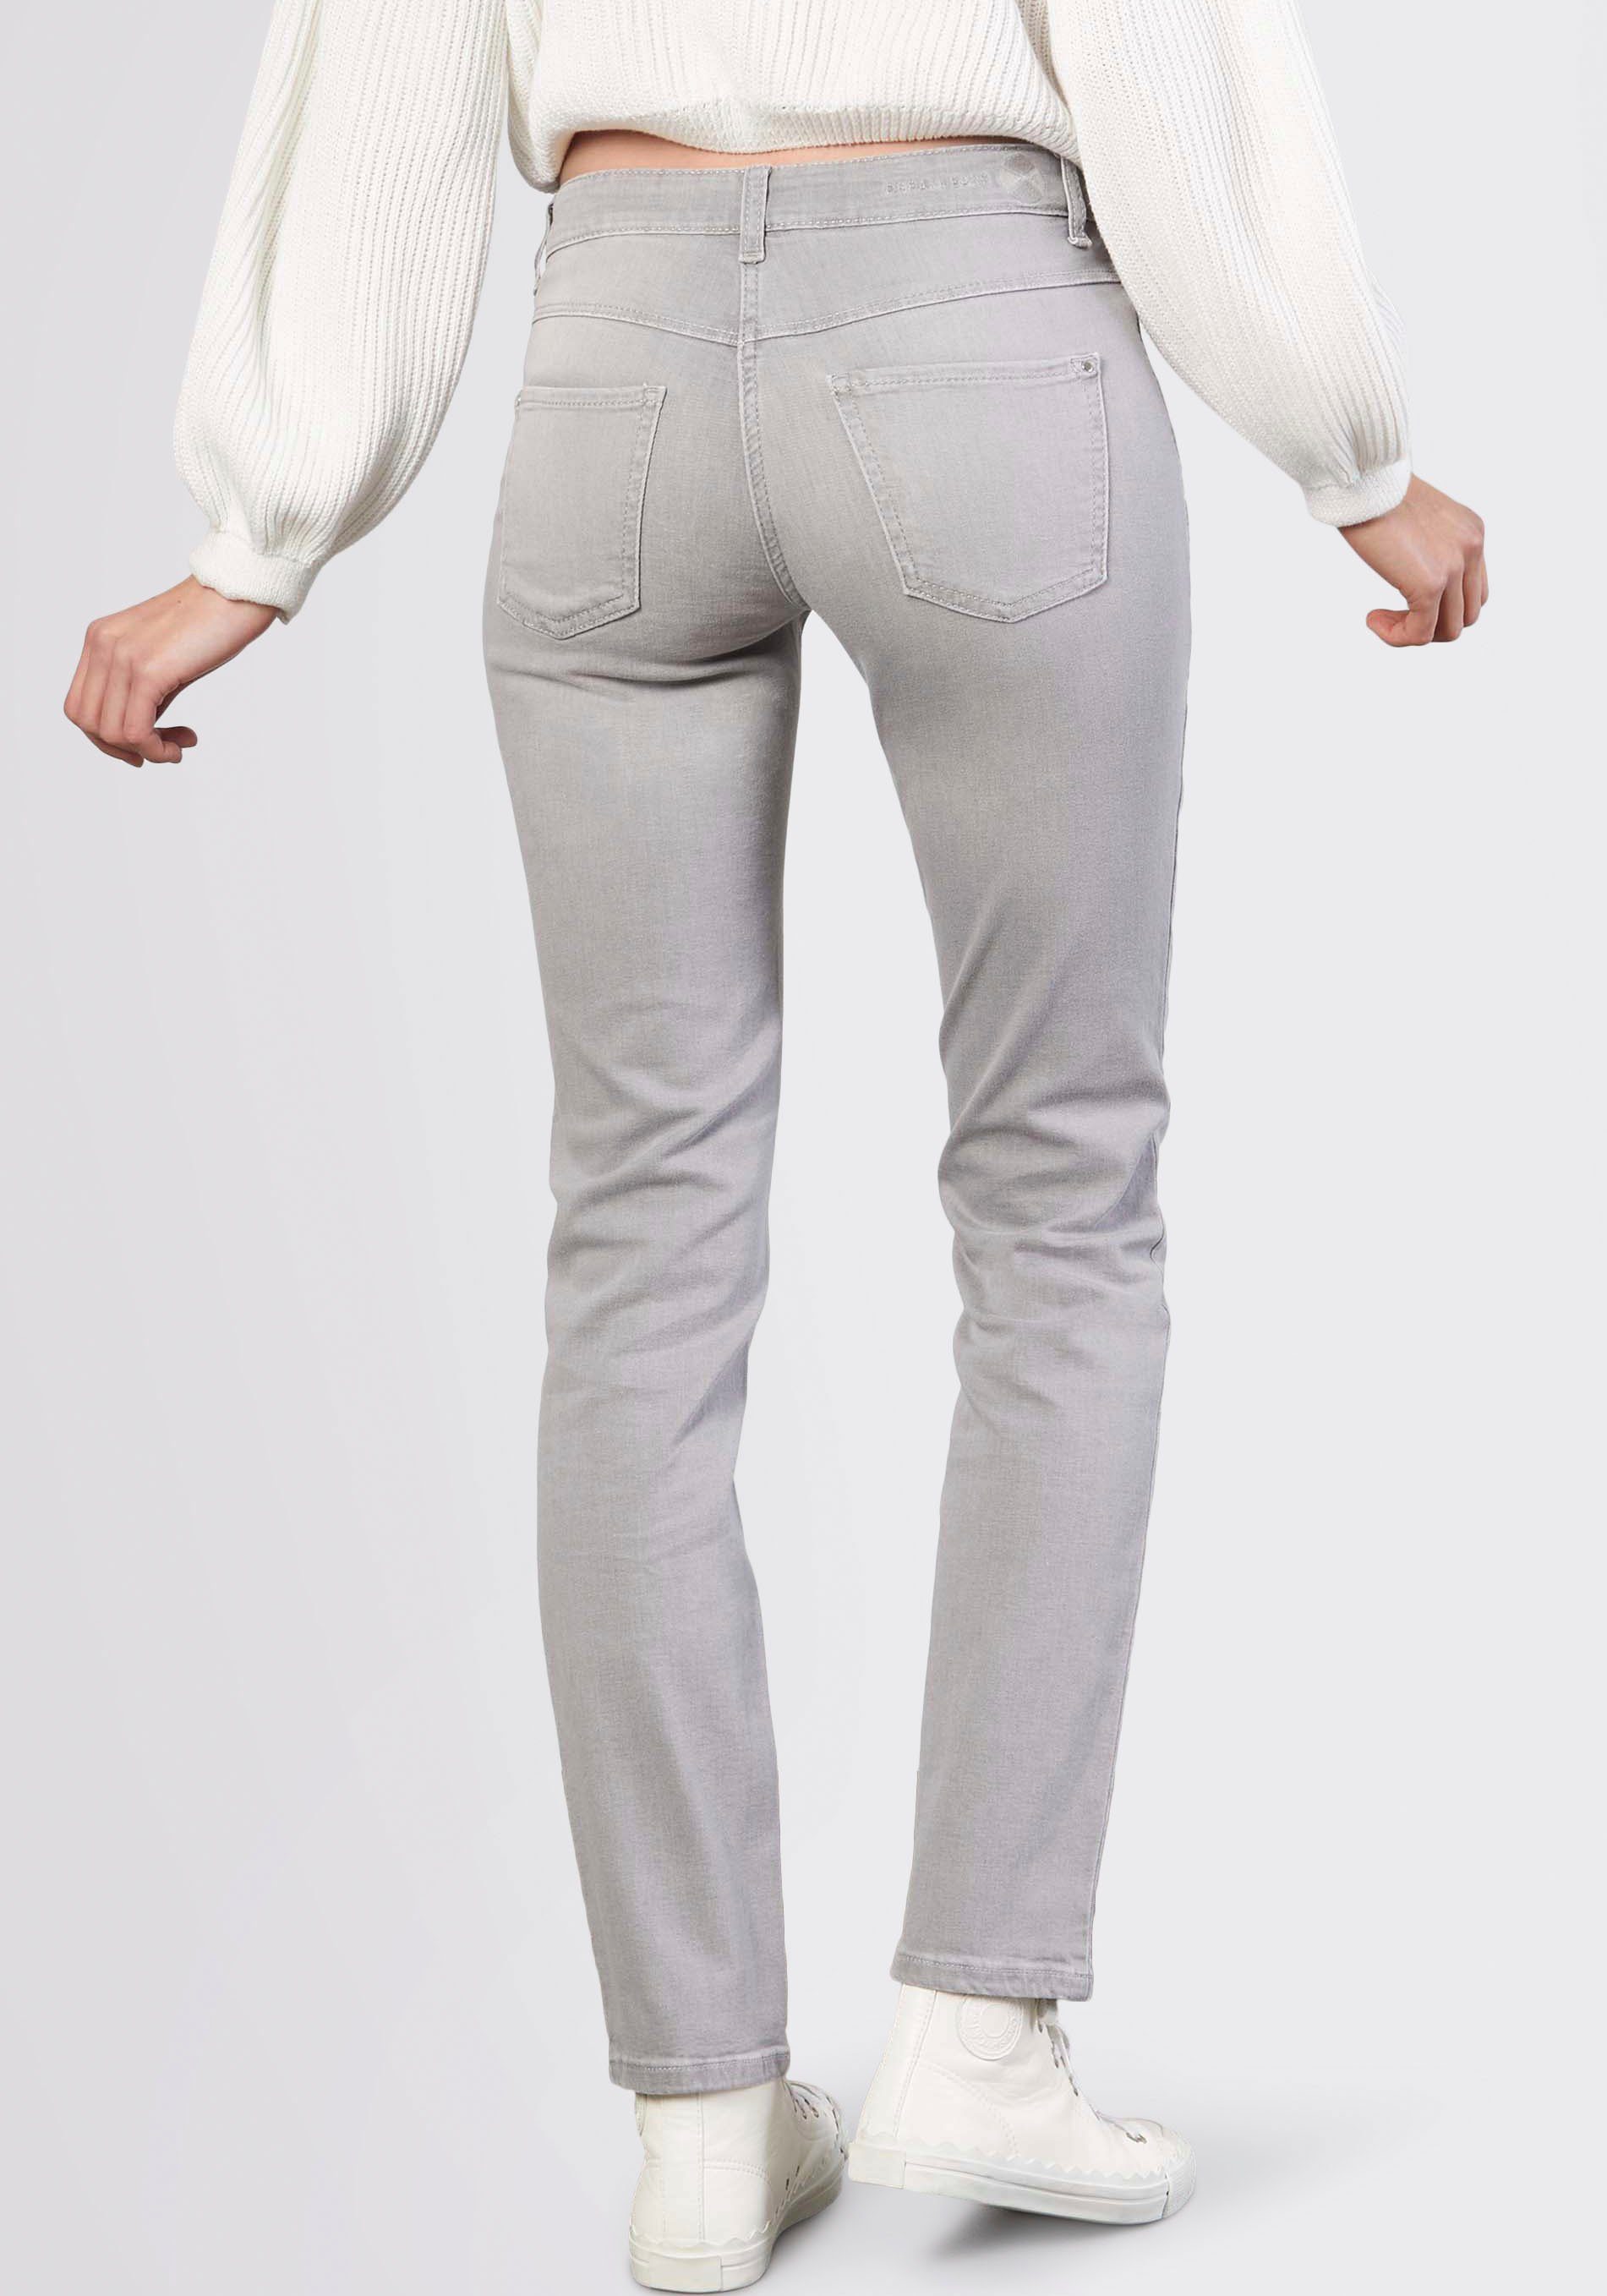 Stretch-Jeans silver light Dream MAC Stretch grey den mit Sitz perfekten für